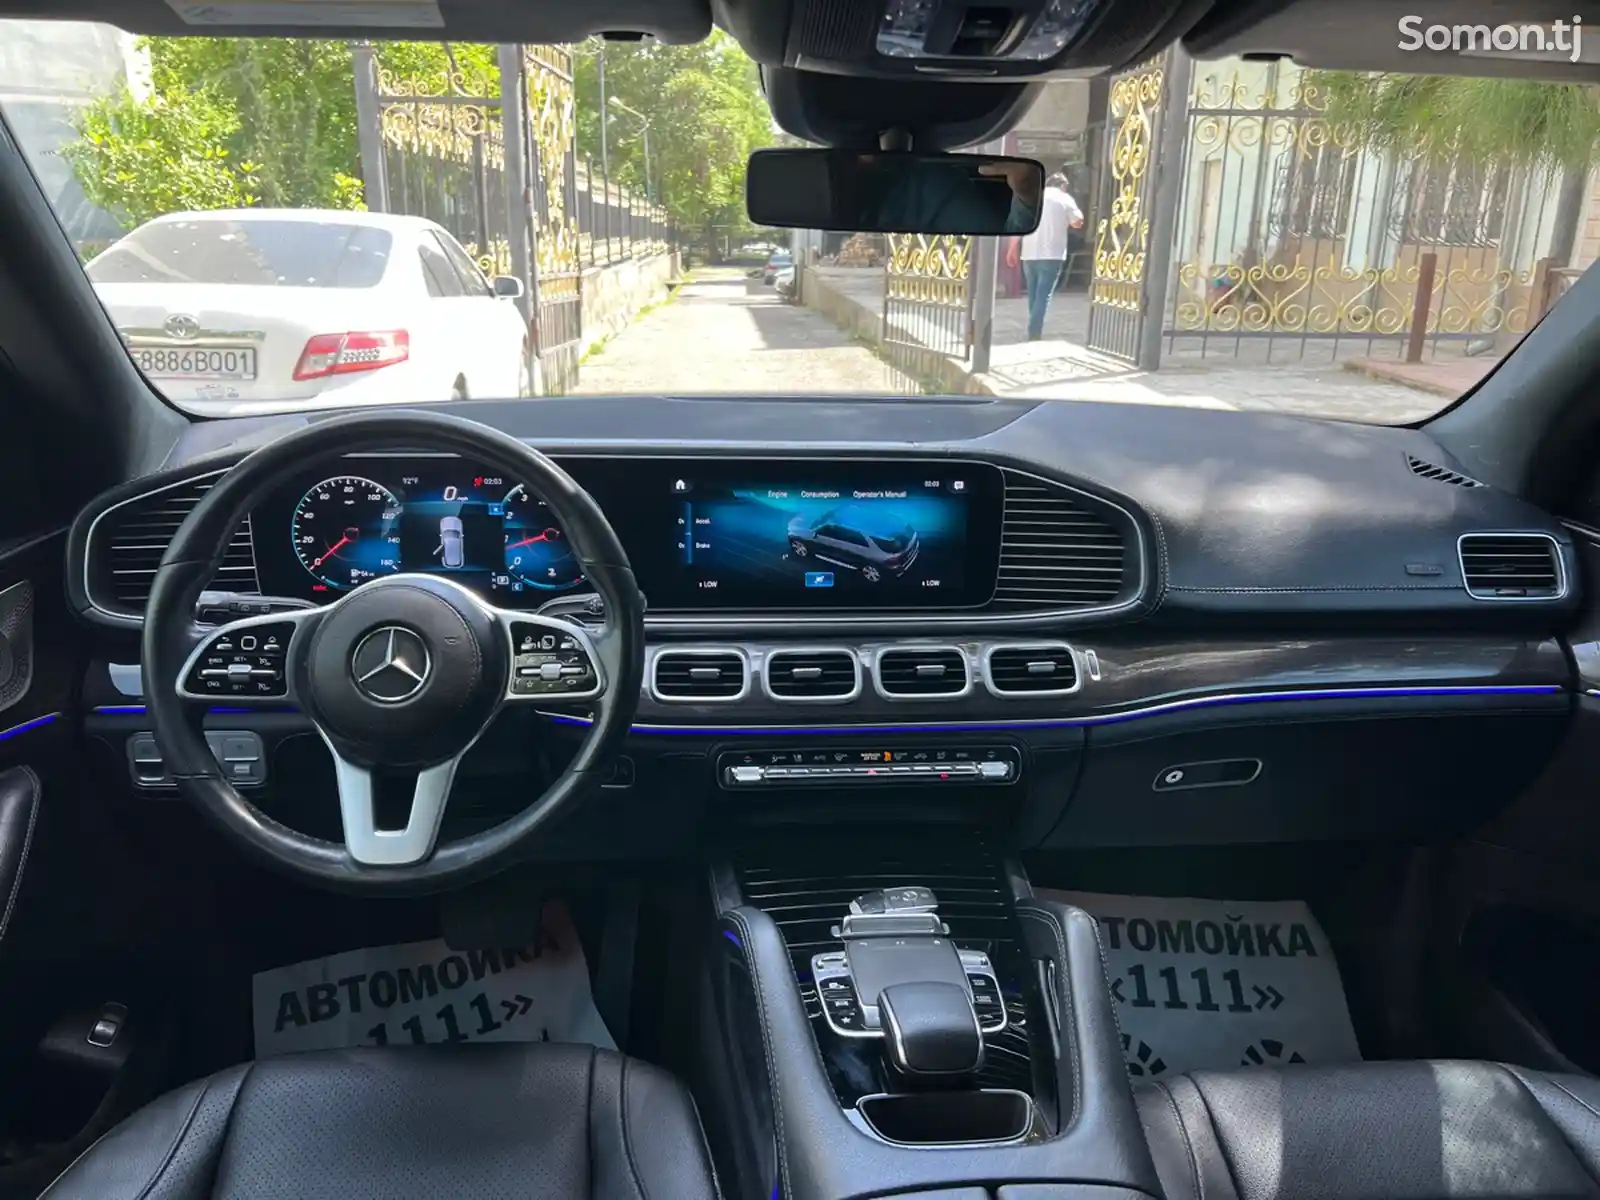 Mercedes-Benz GLE class, 2020-11